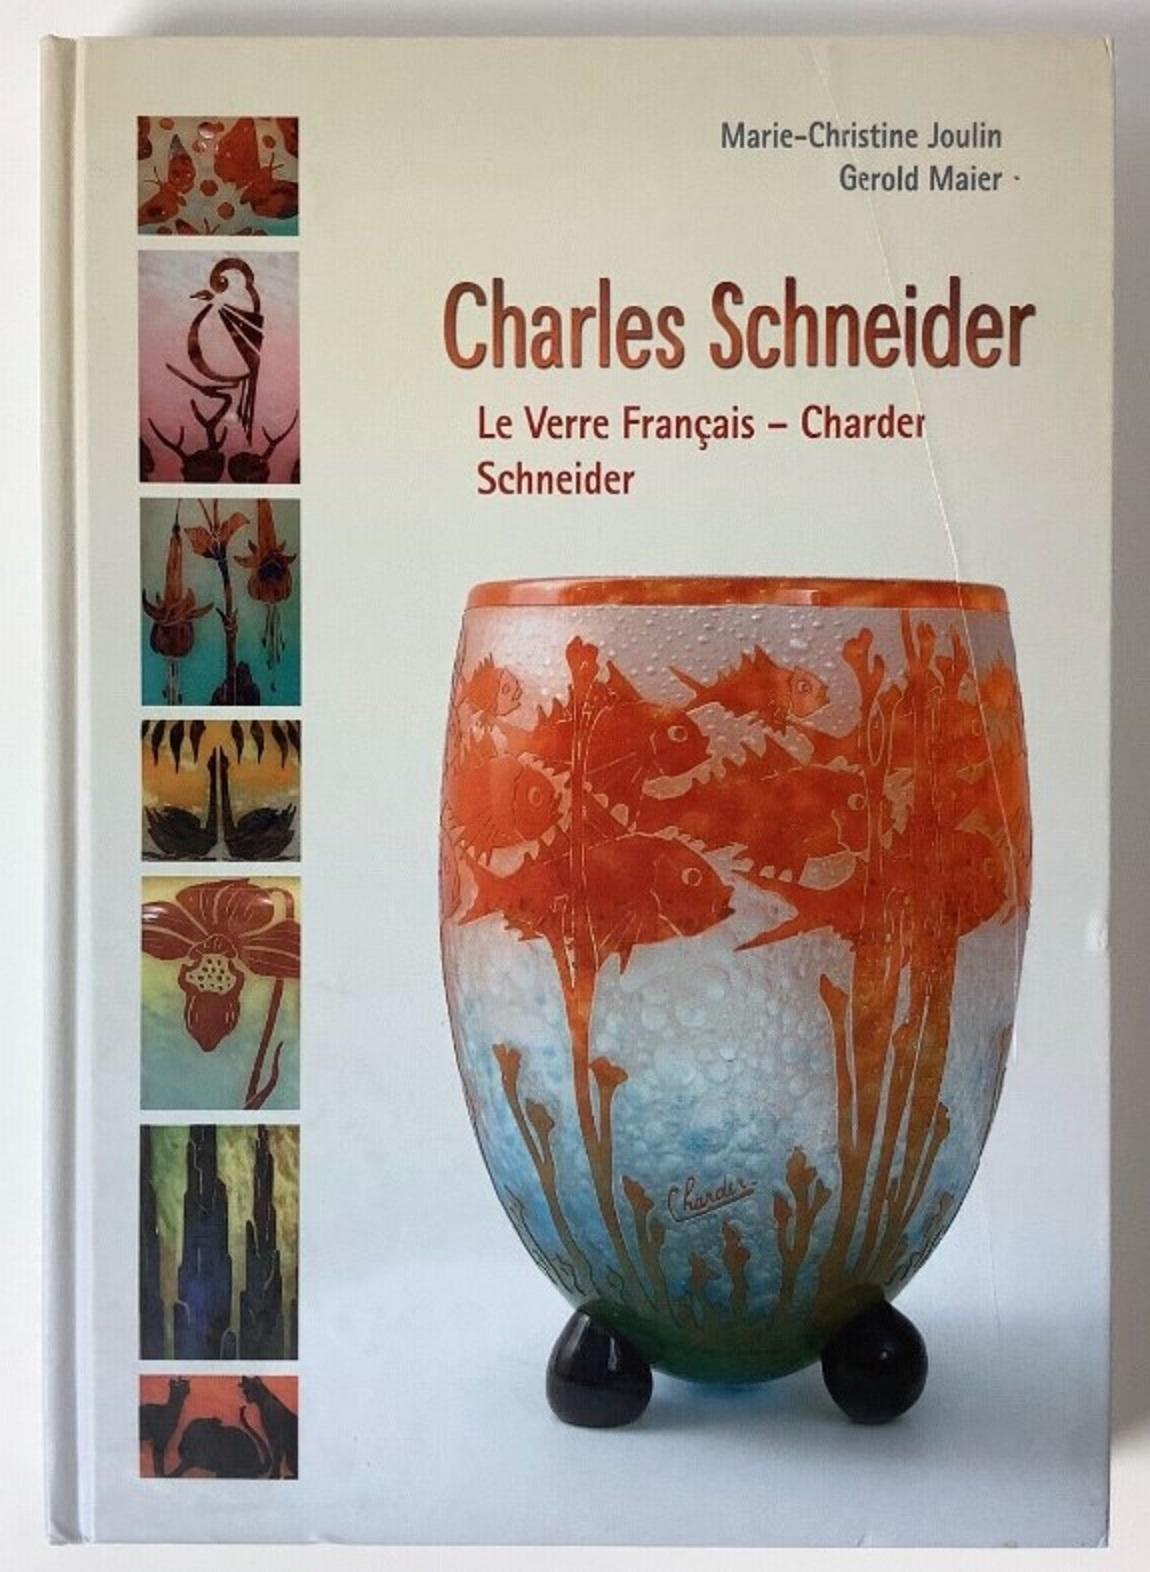 Signe du vase : Schneider
( Décoration en jade)
Schneider
Charles Schneider (1881-1953) a étudié l'art dans deux des plus prestigieuses écoles d'art françaises. D'abord à l'Ecole des Beaux-Arts de Nancy, puis à l'Ecole des Beaux-Arts de Paris.